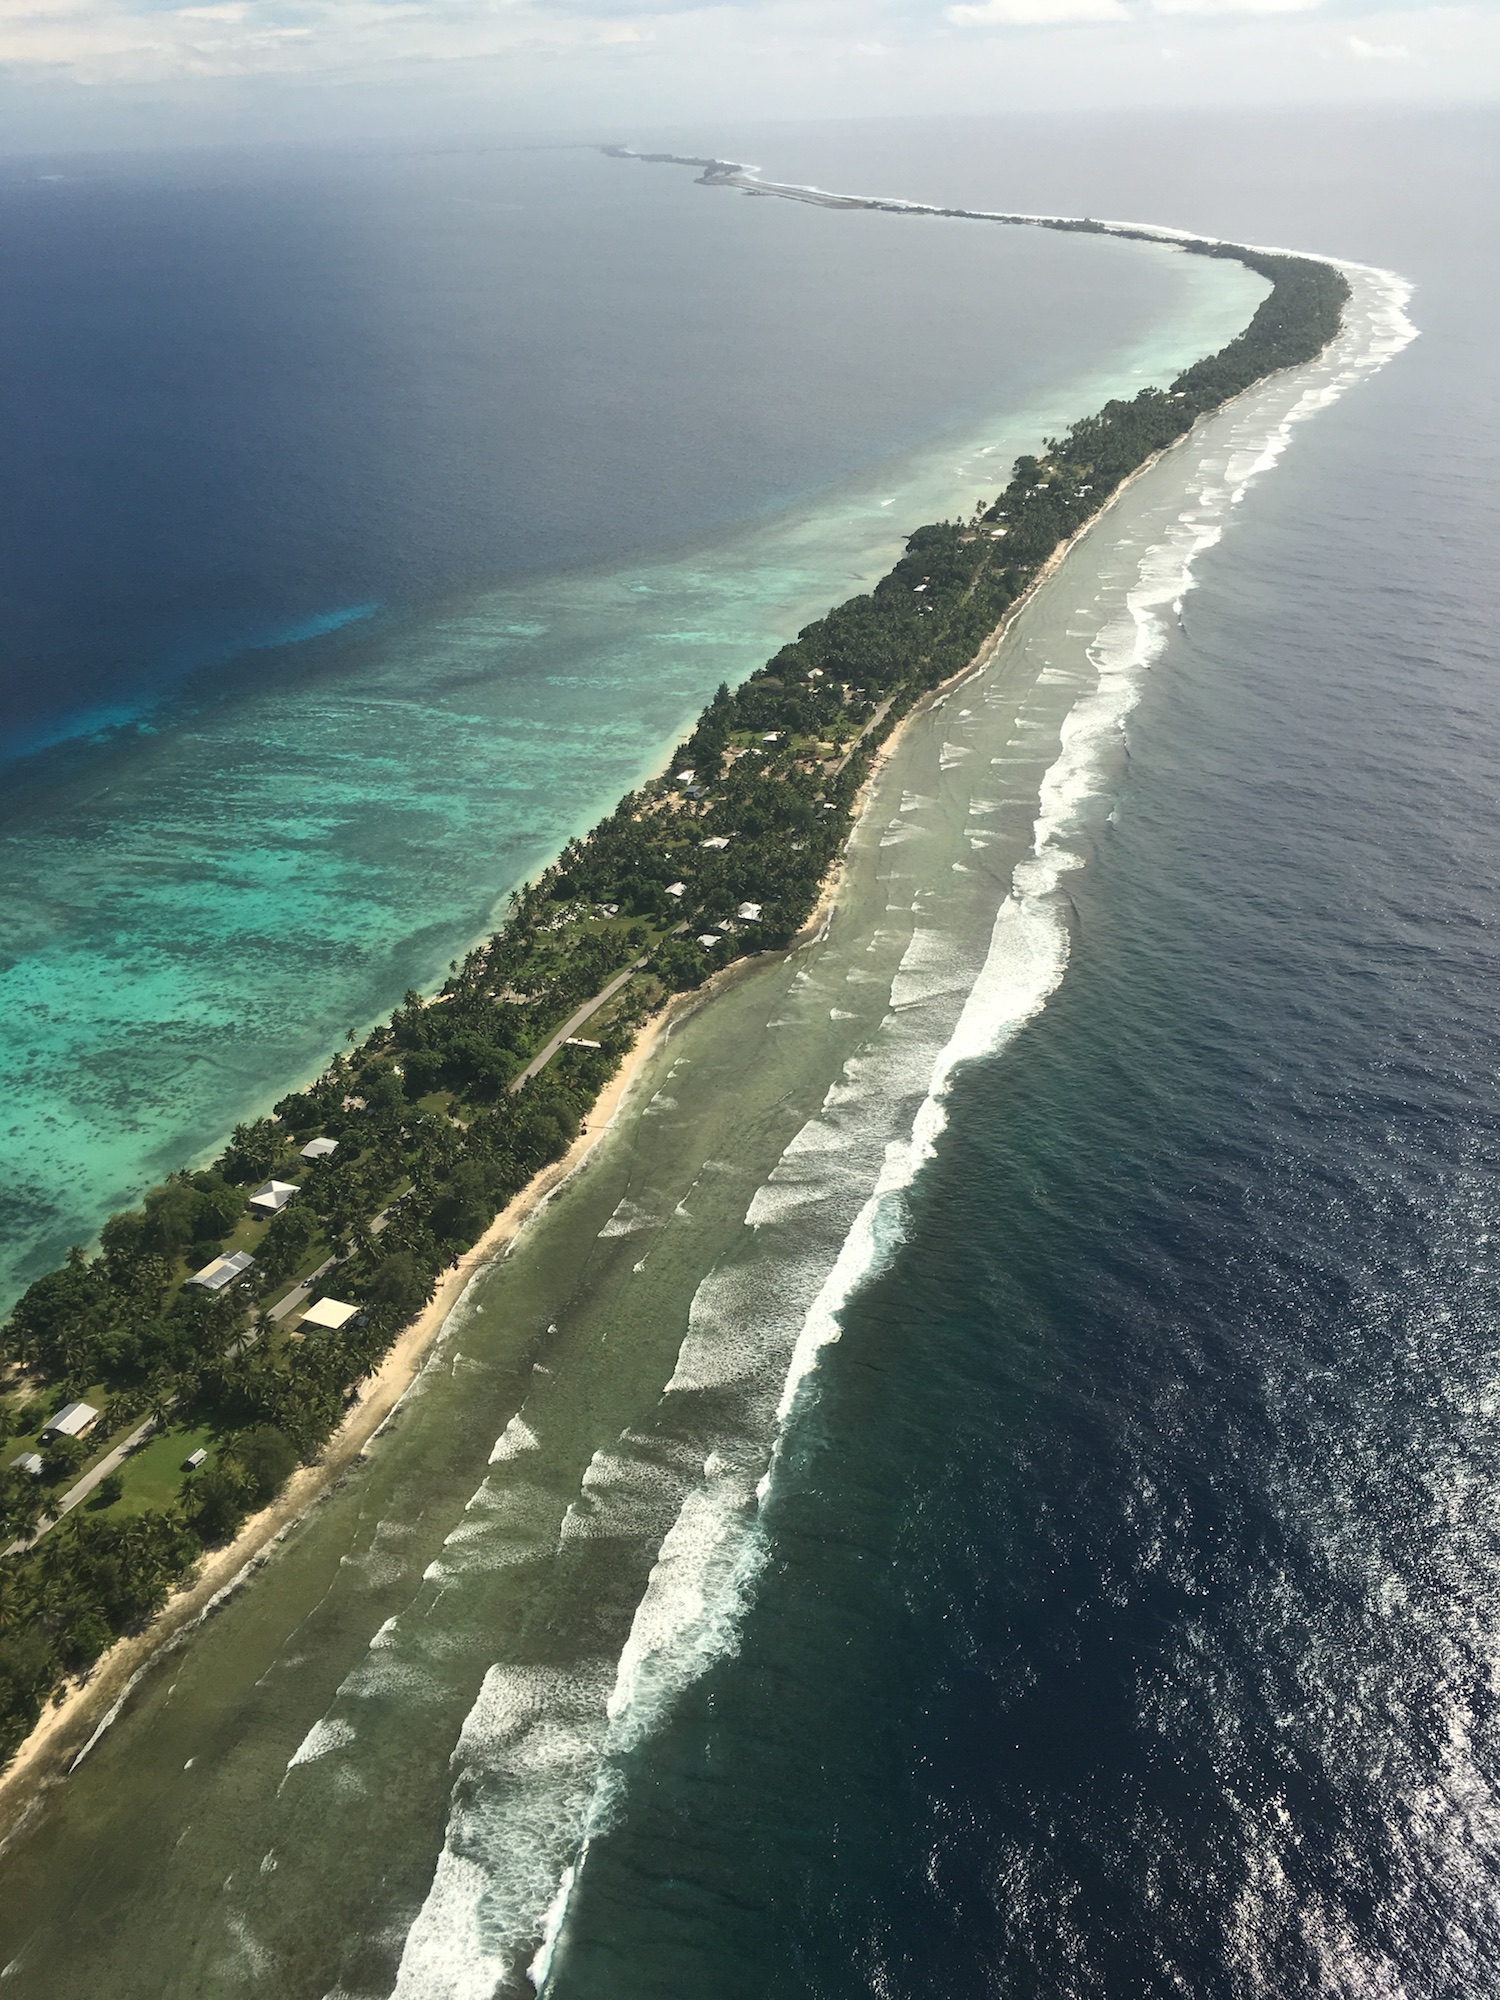 Majuro Atoll from the air